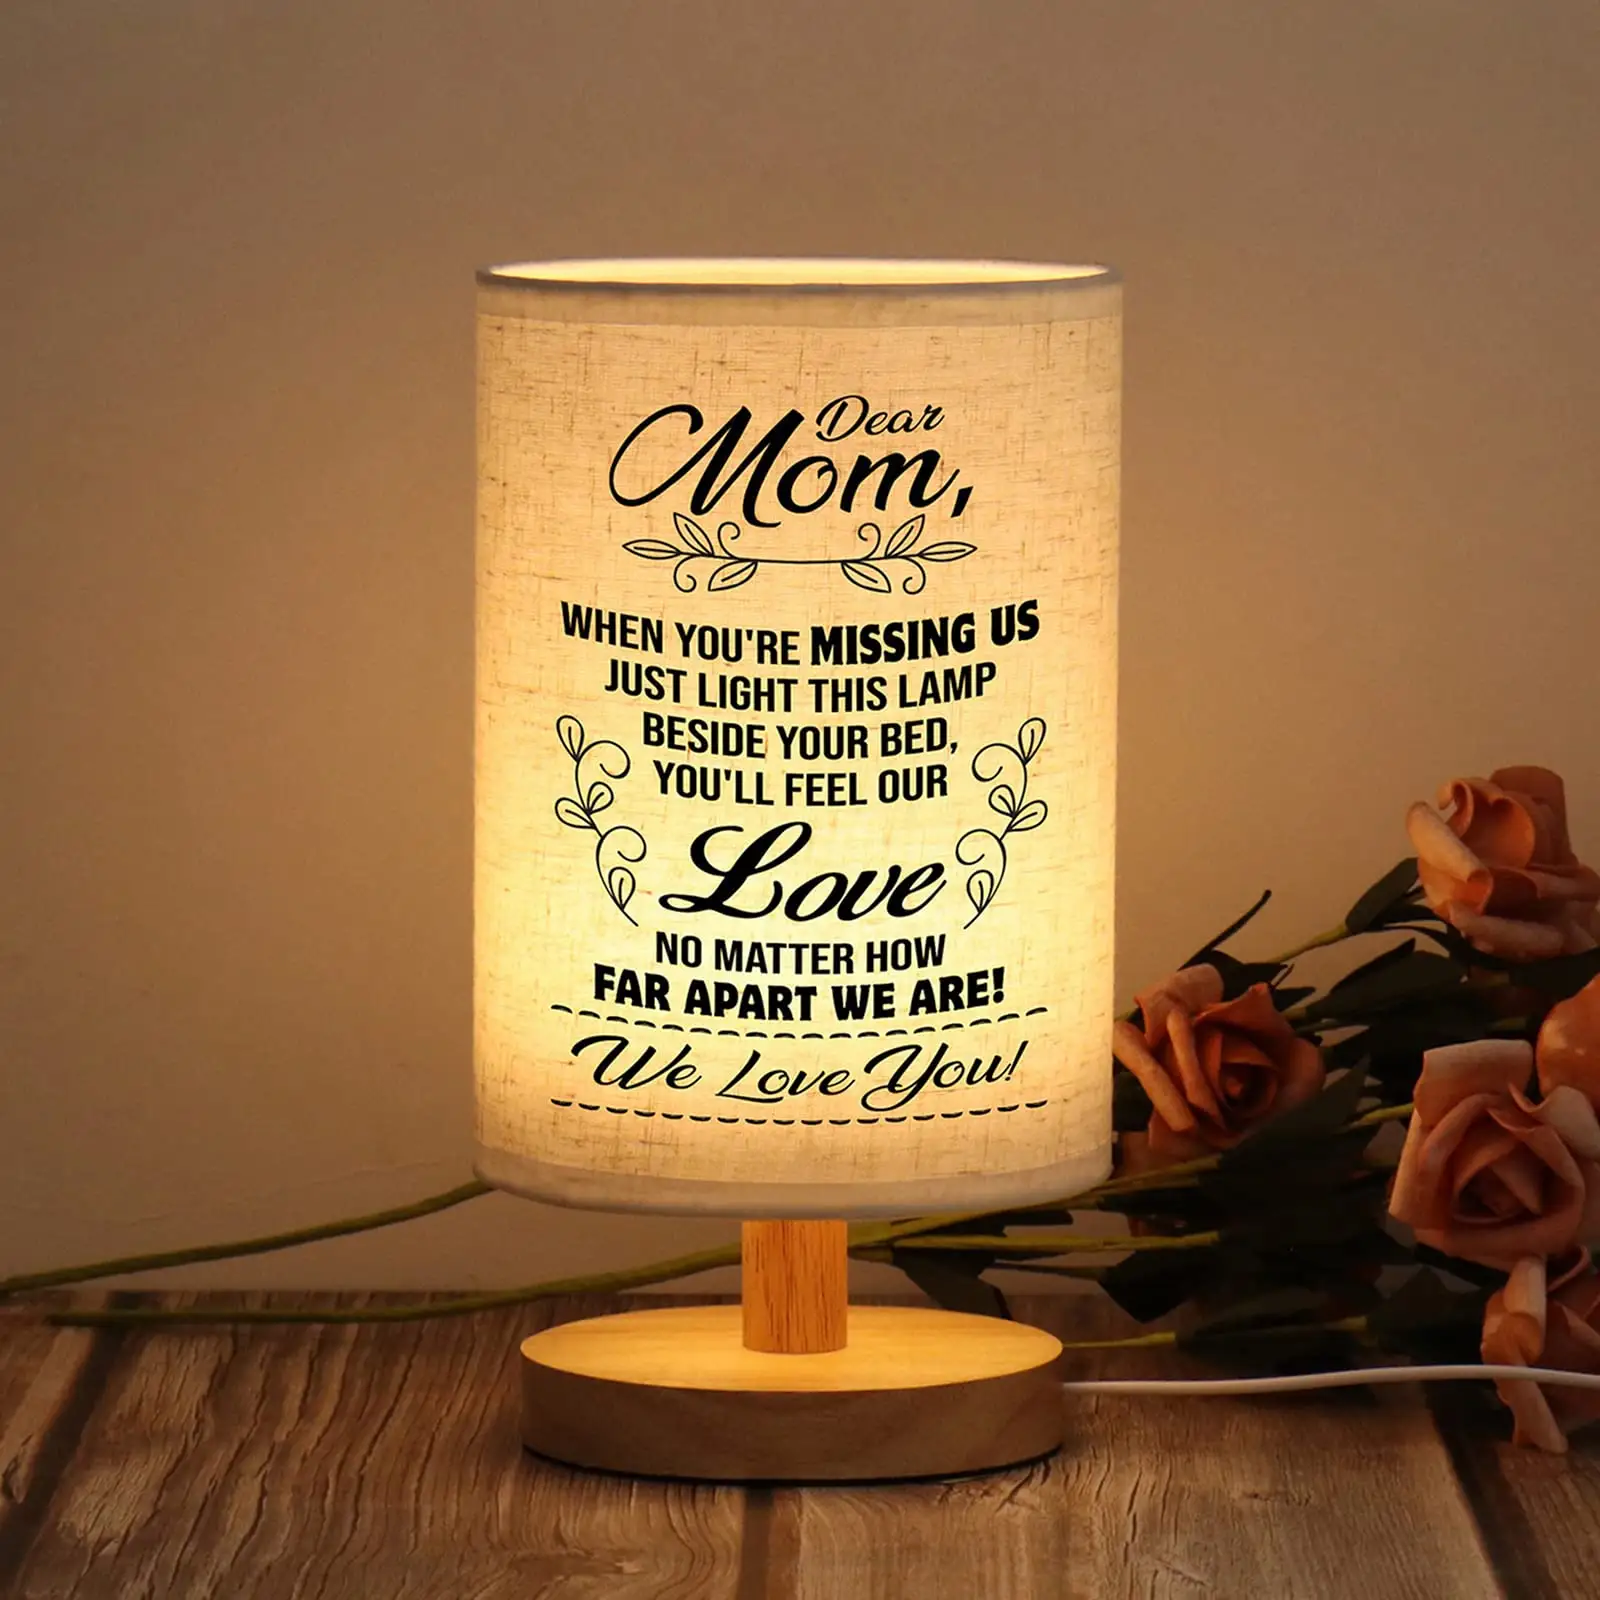 Atacado lâmpada de mesa dia das mães aniversário presentes de aniversário para mamãe casa deco